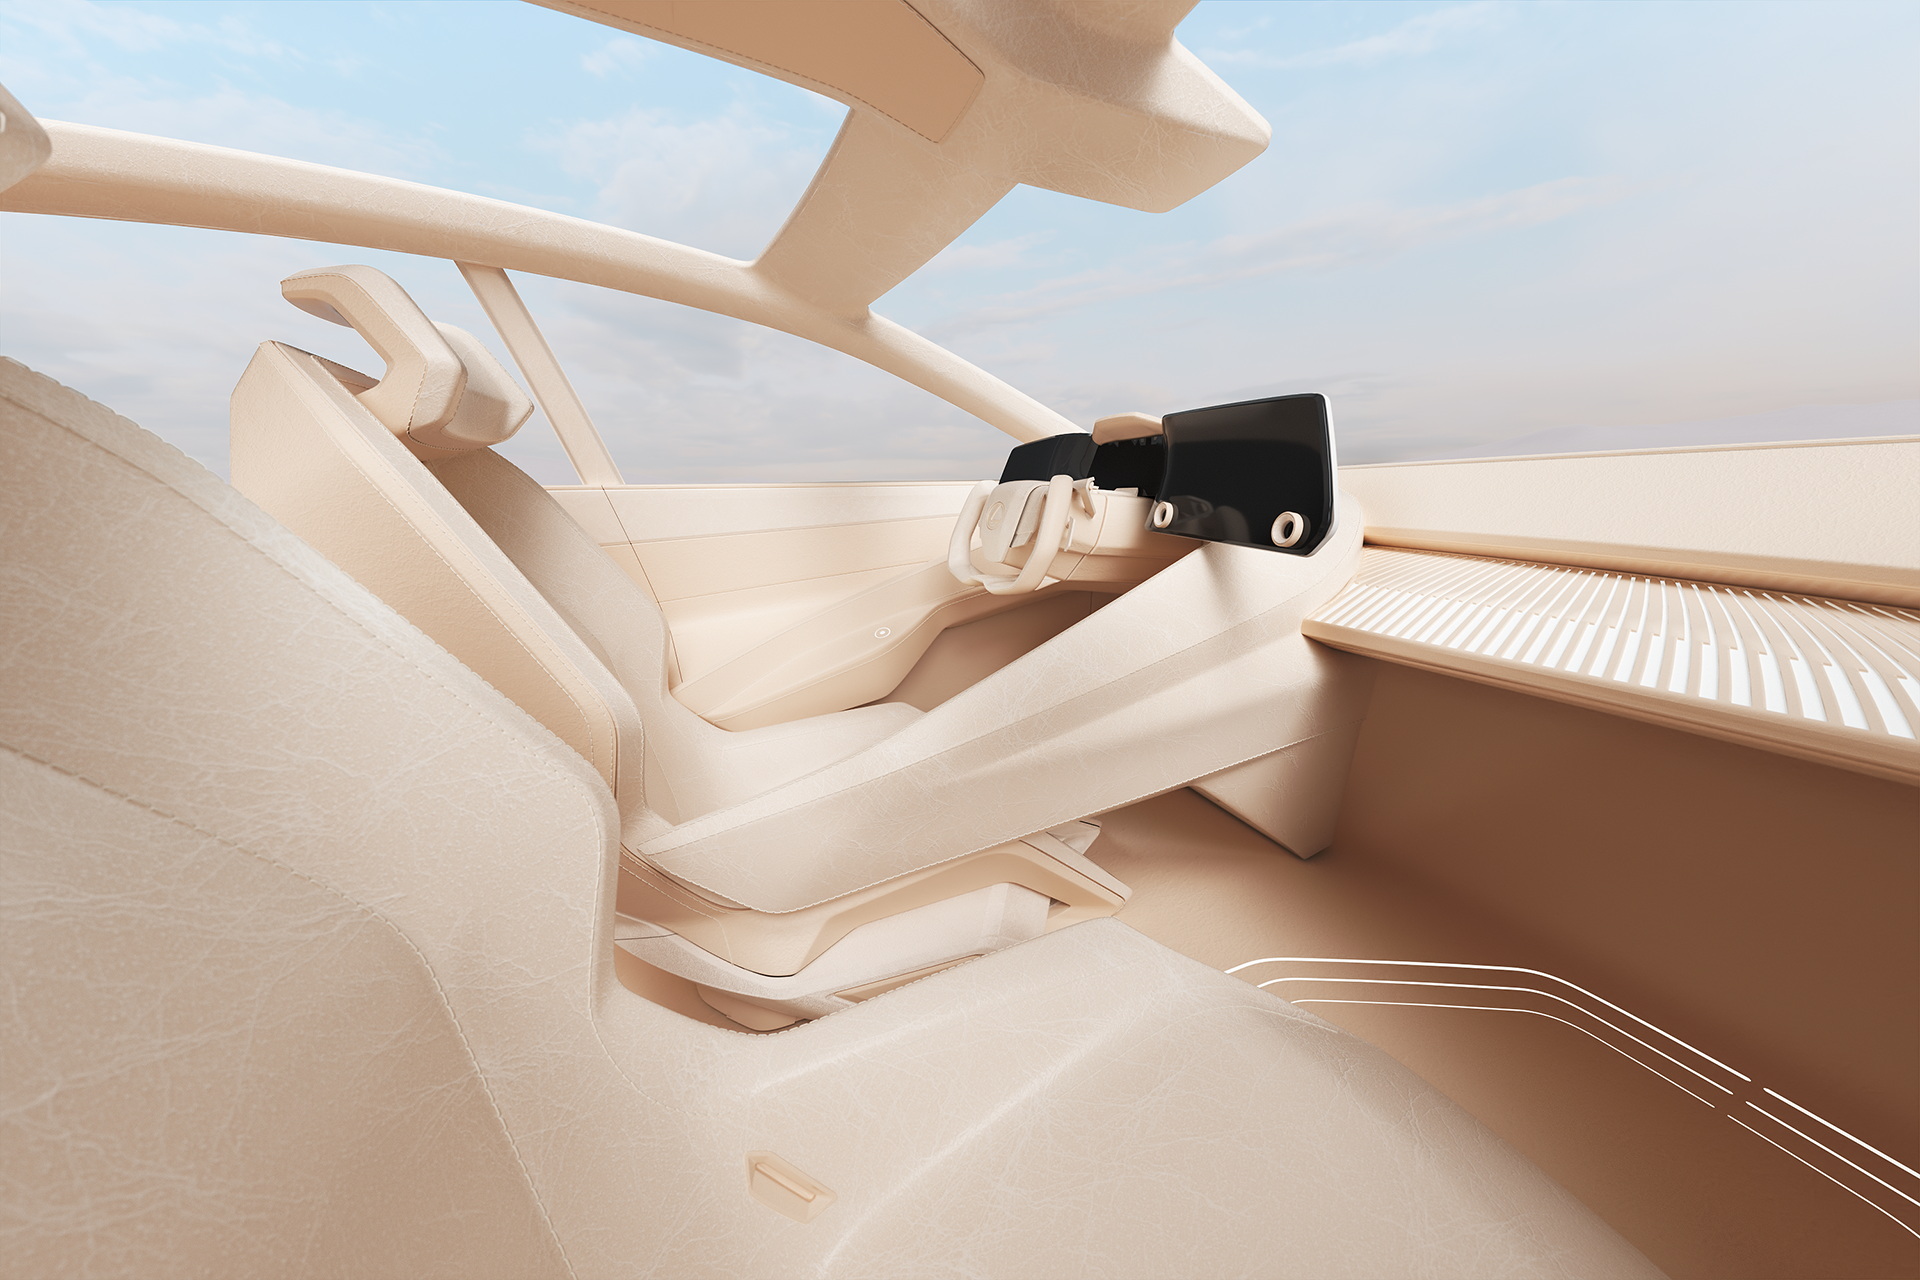 Thích hay không thích, đây có thể là nội thất tương lai của Lexus mà các đại gia phải làm quen - Ảnh 2.